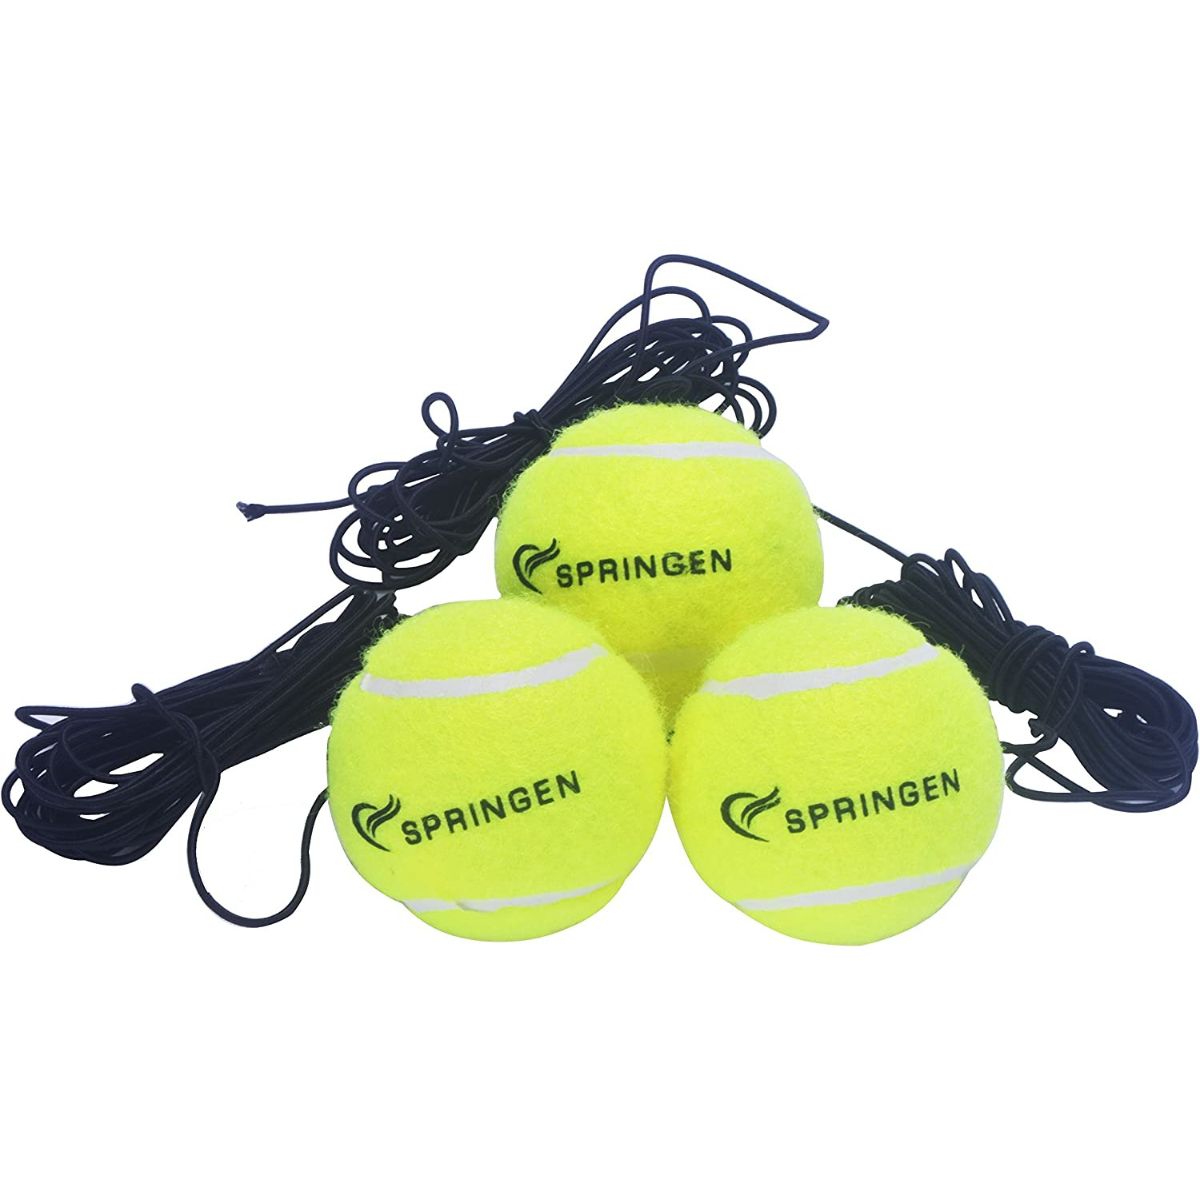 The Best Tennis Balls for Practice Options: Springen 3 Pack Tennis Balls